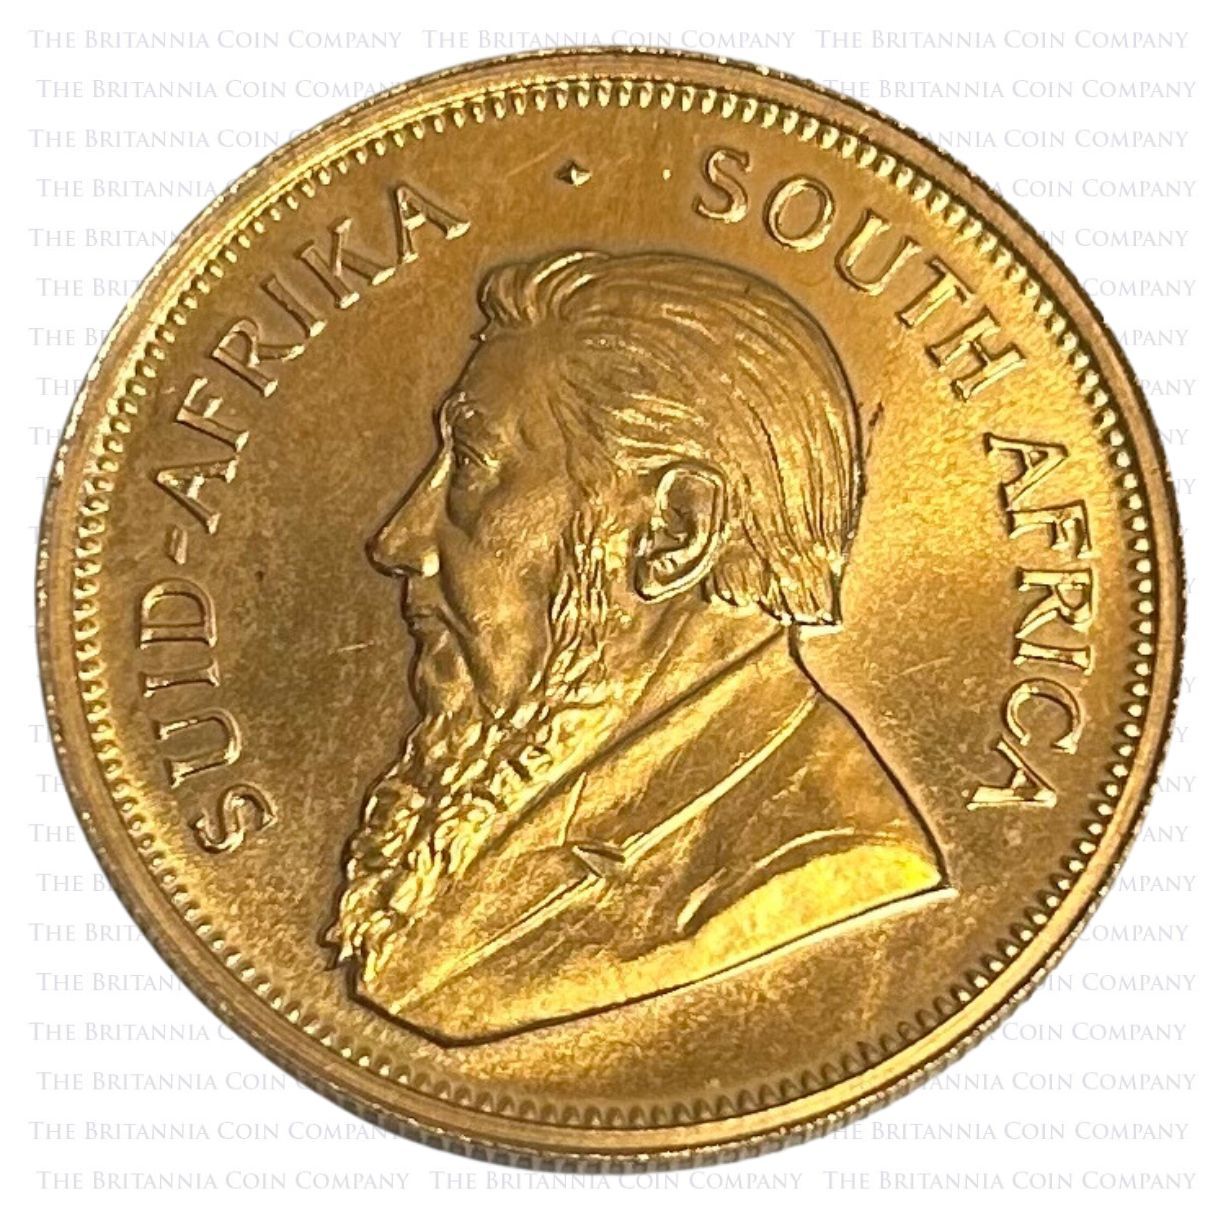 SA68KR1G 1968 South Africa Krugerrand One Ounce Gold Bullion Coin Obverse